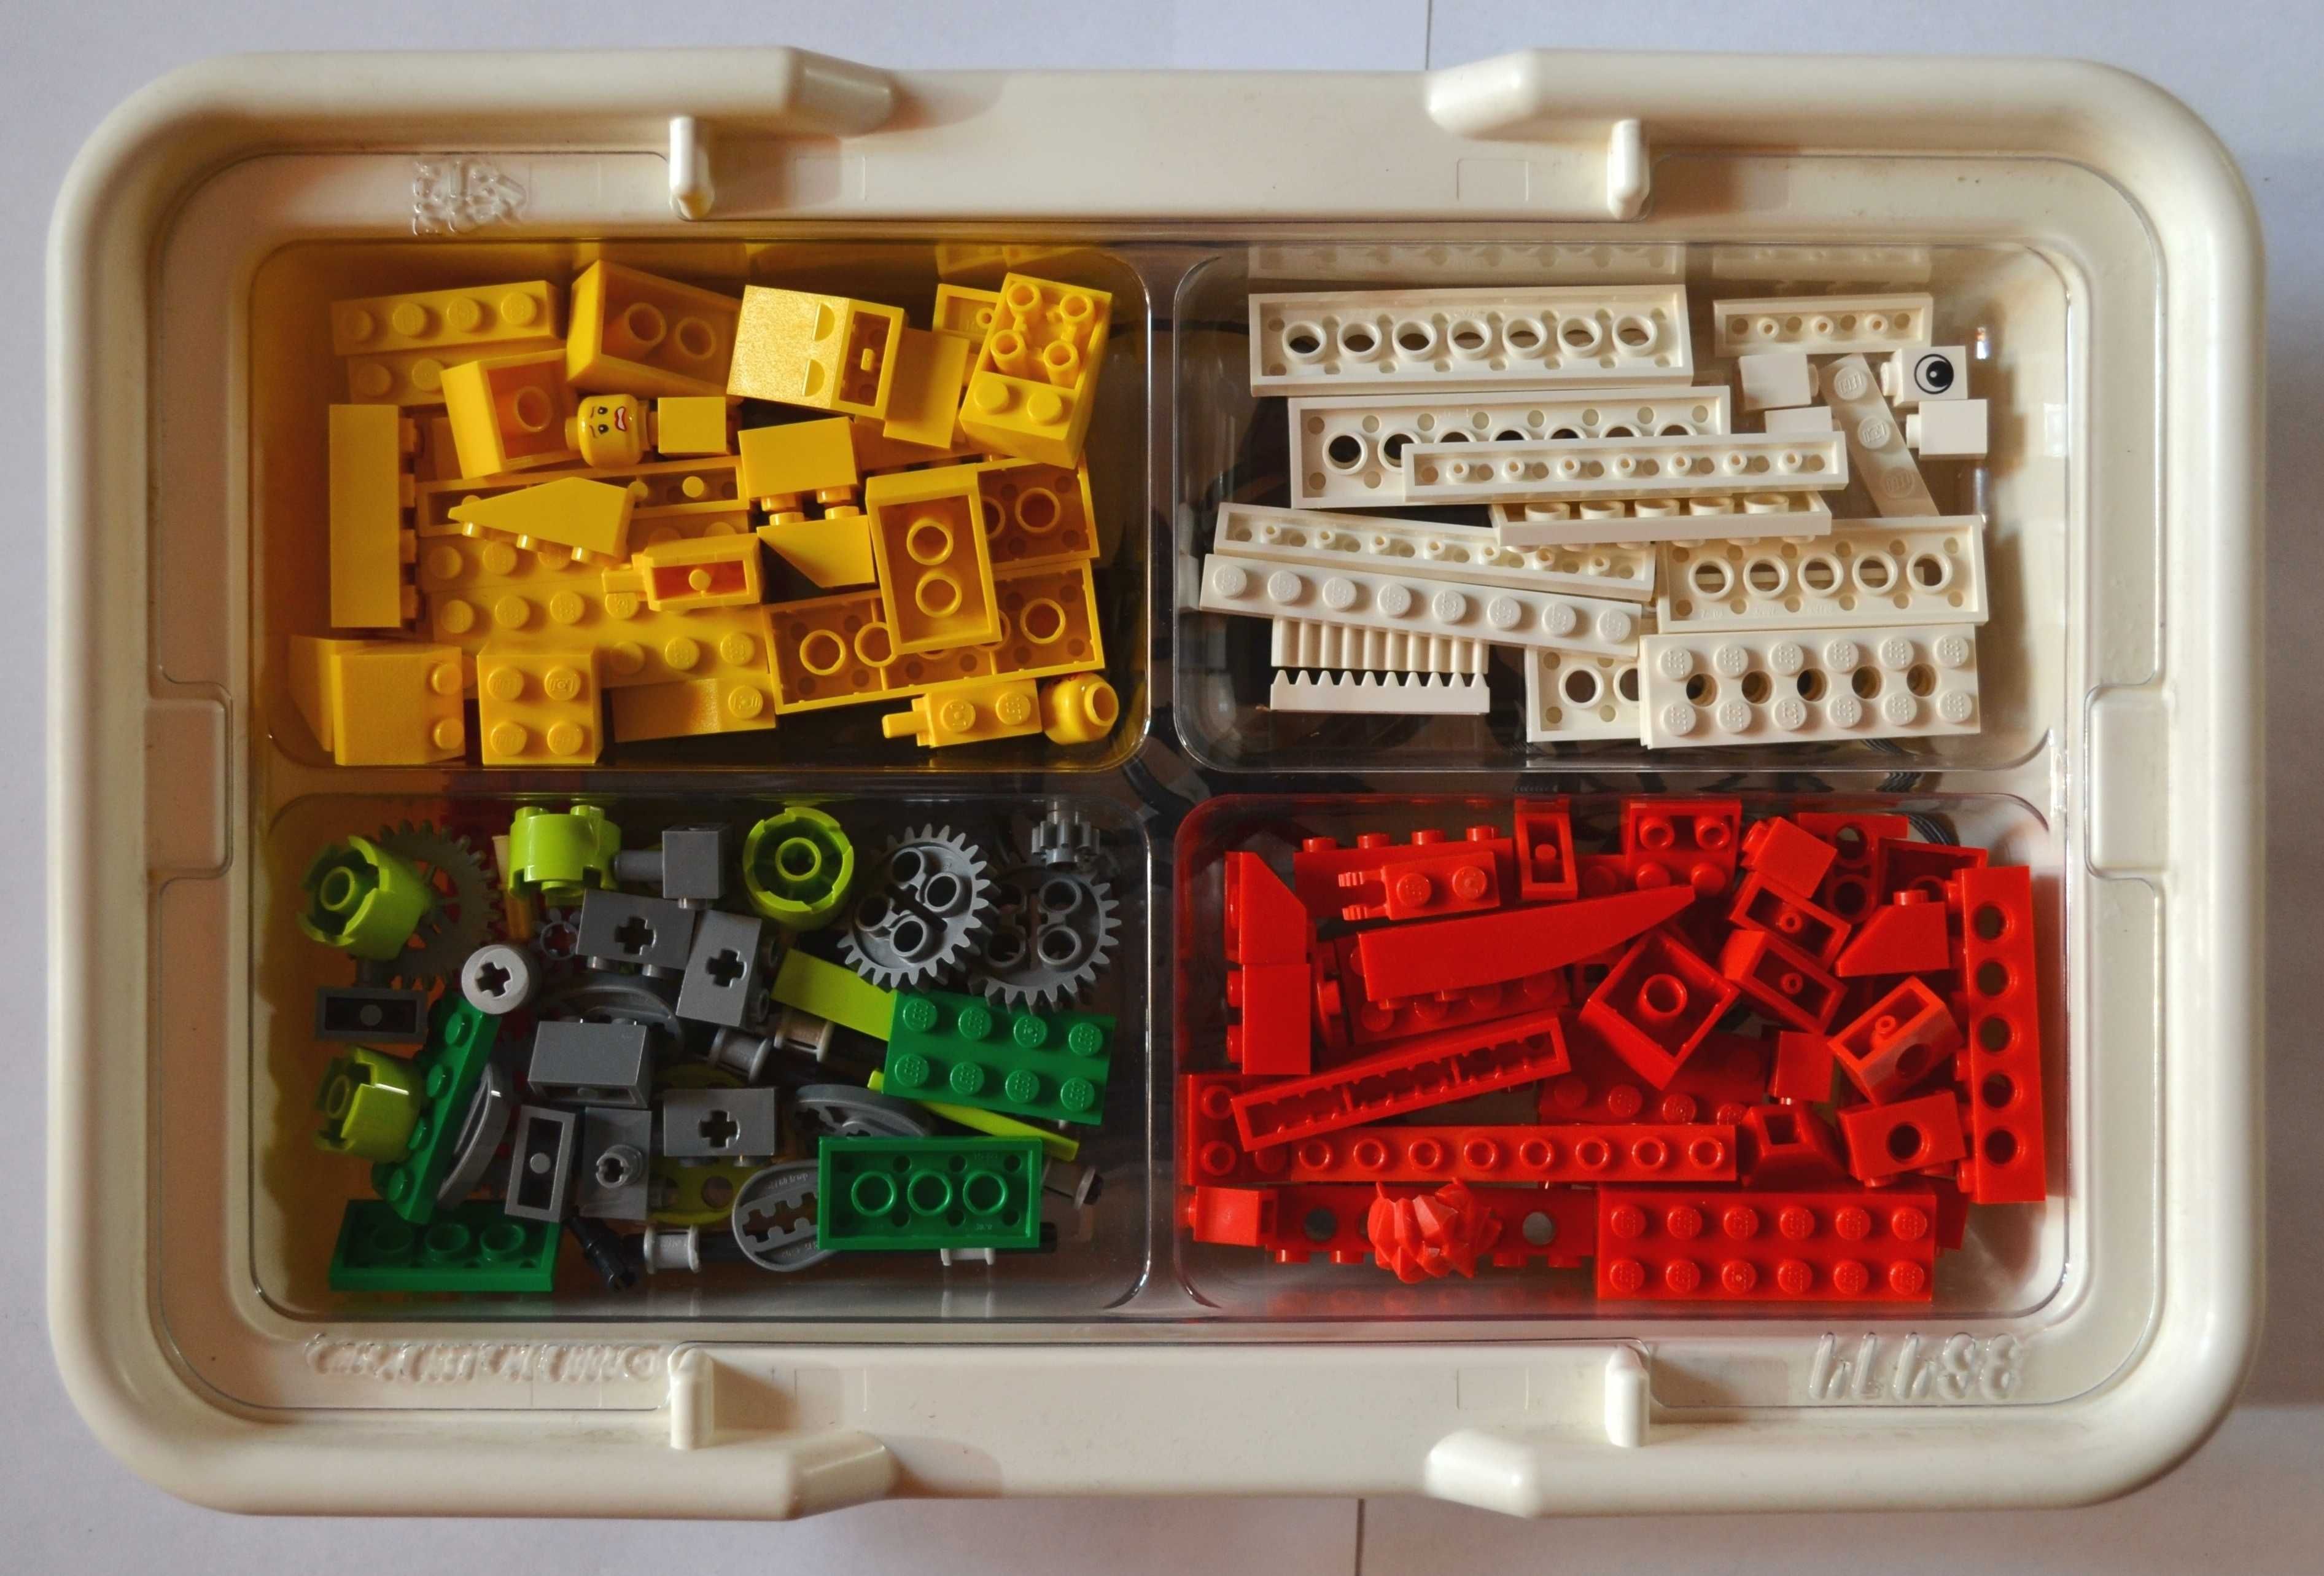 Продам: Конструктор LEGO Education WeDo Construction Set (9580) б/у